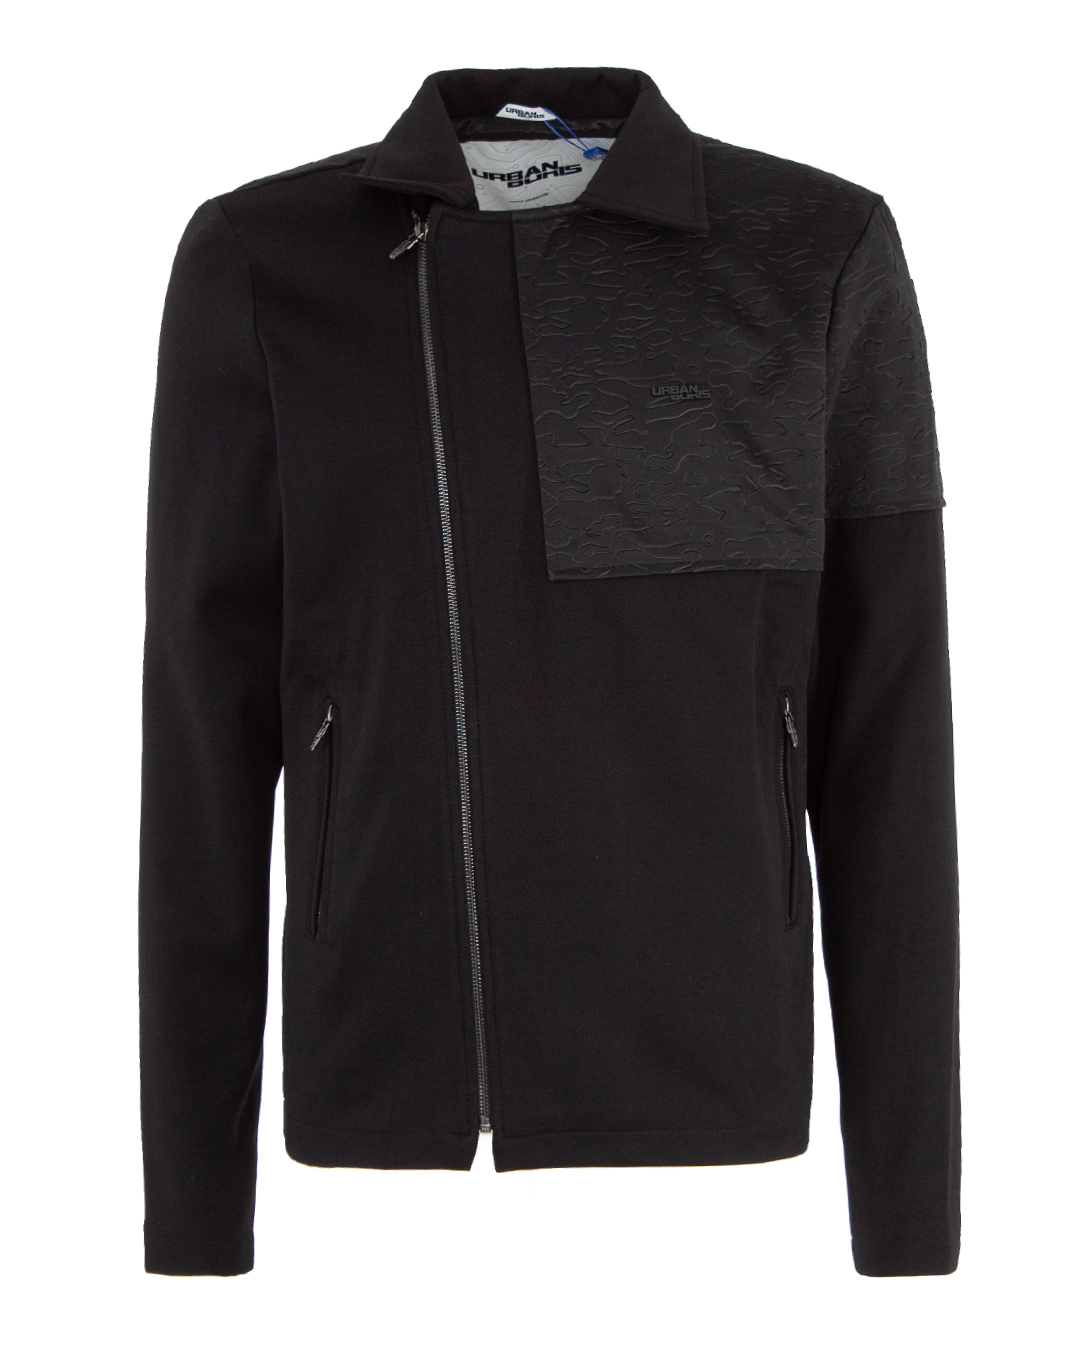 пиджак URBAN BORIS JKT01-M черный m, размер m